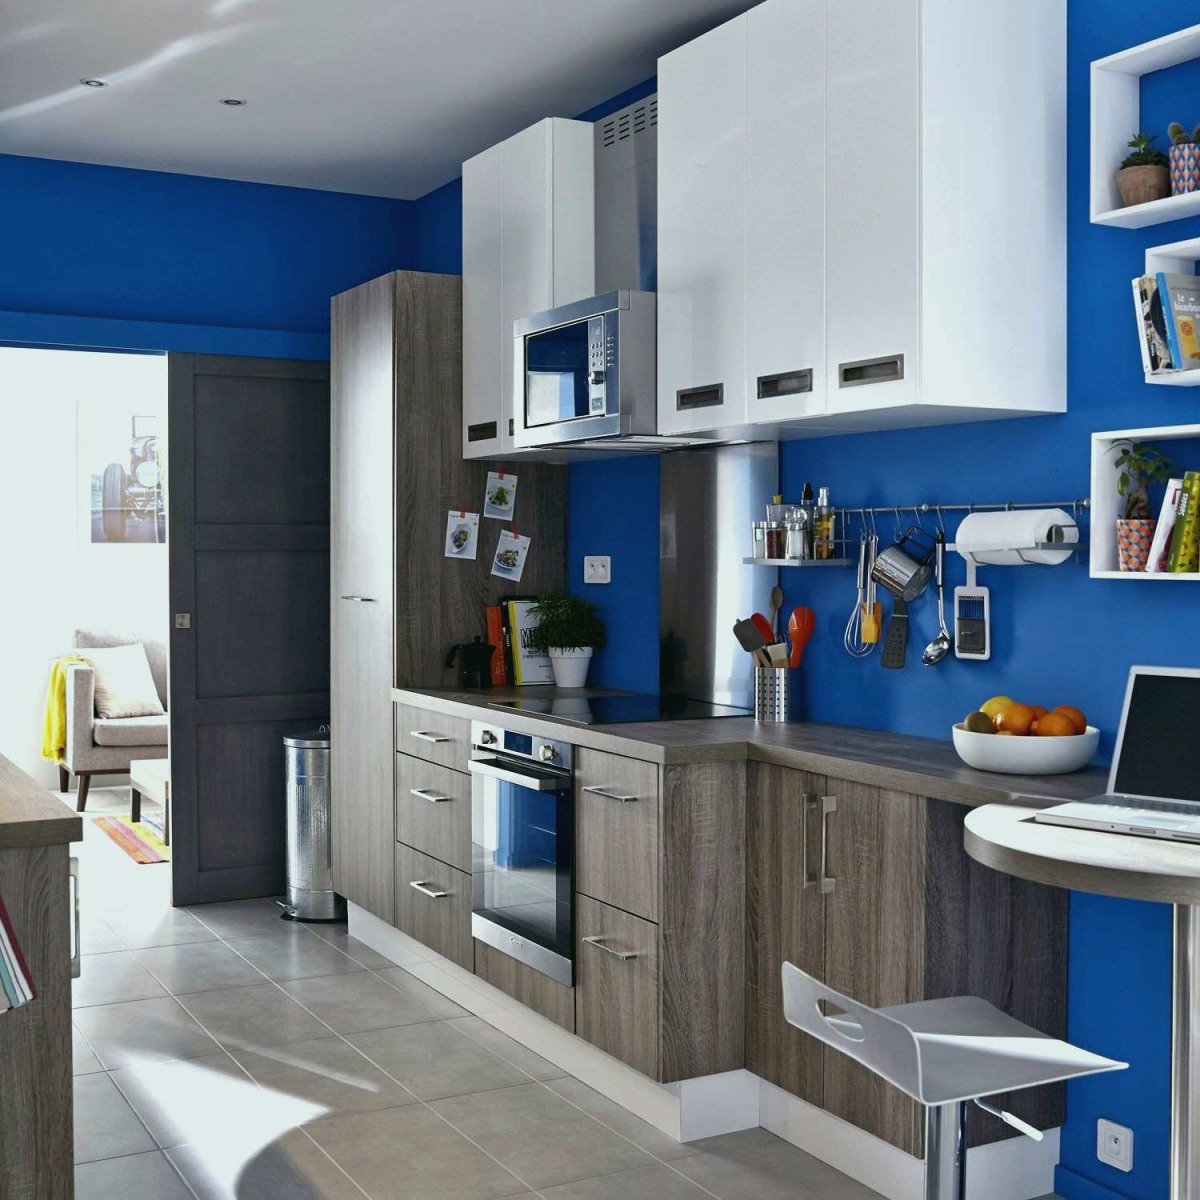 Синяя кухня Леруа Мерлен в интерьере